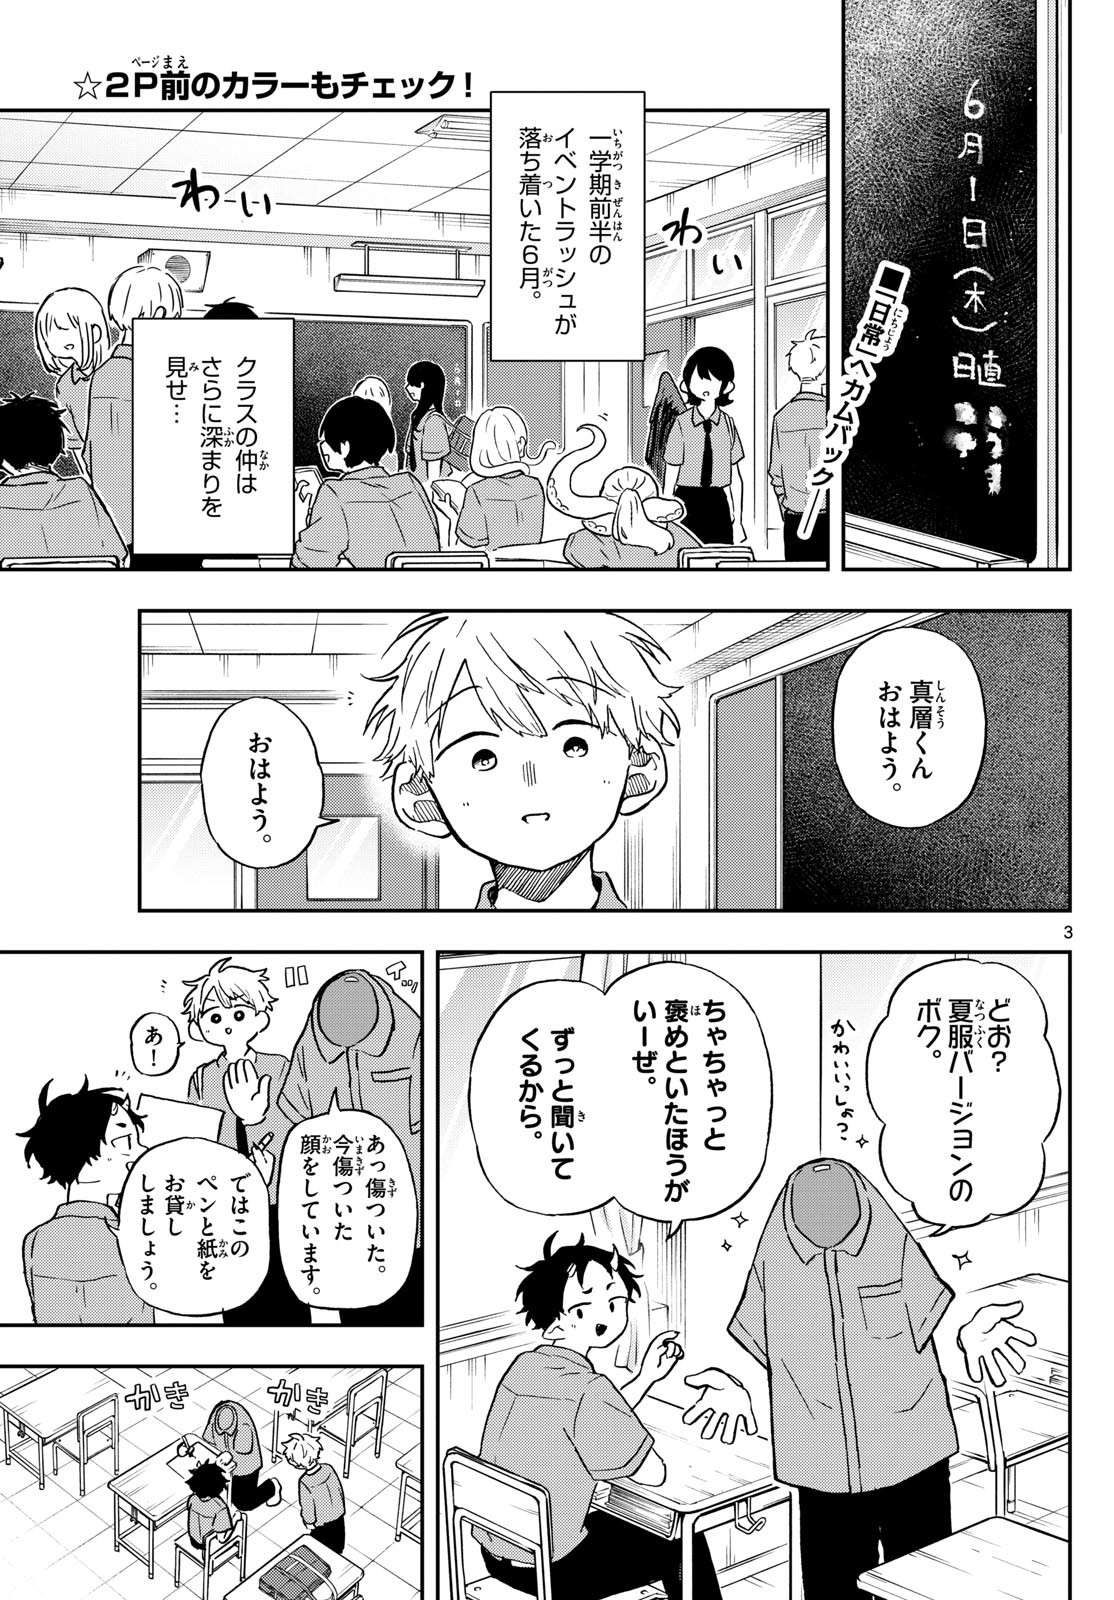 Omori Tsumiki to Kinichijou. - Chapter 18 - Page 2